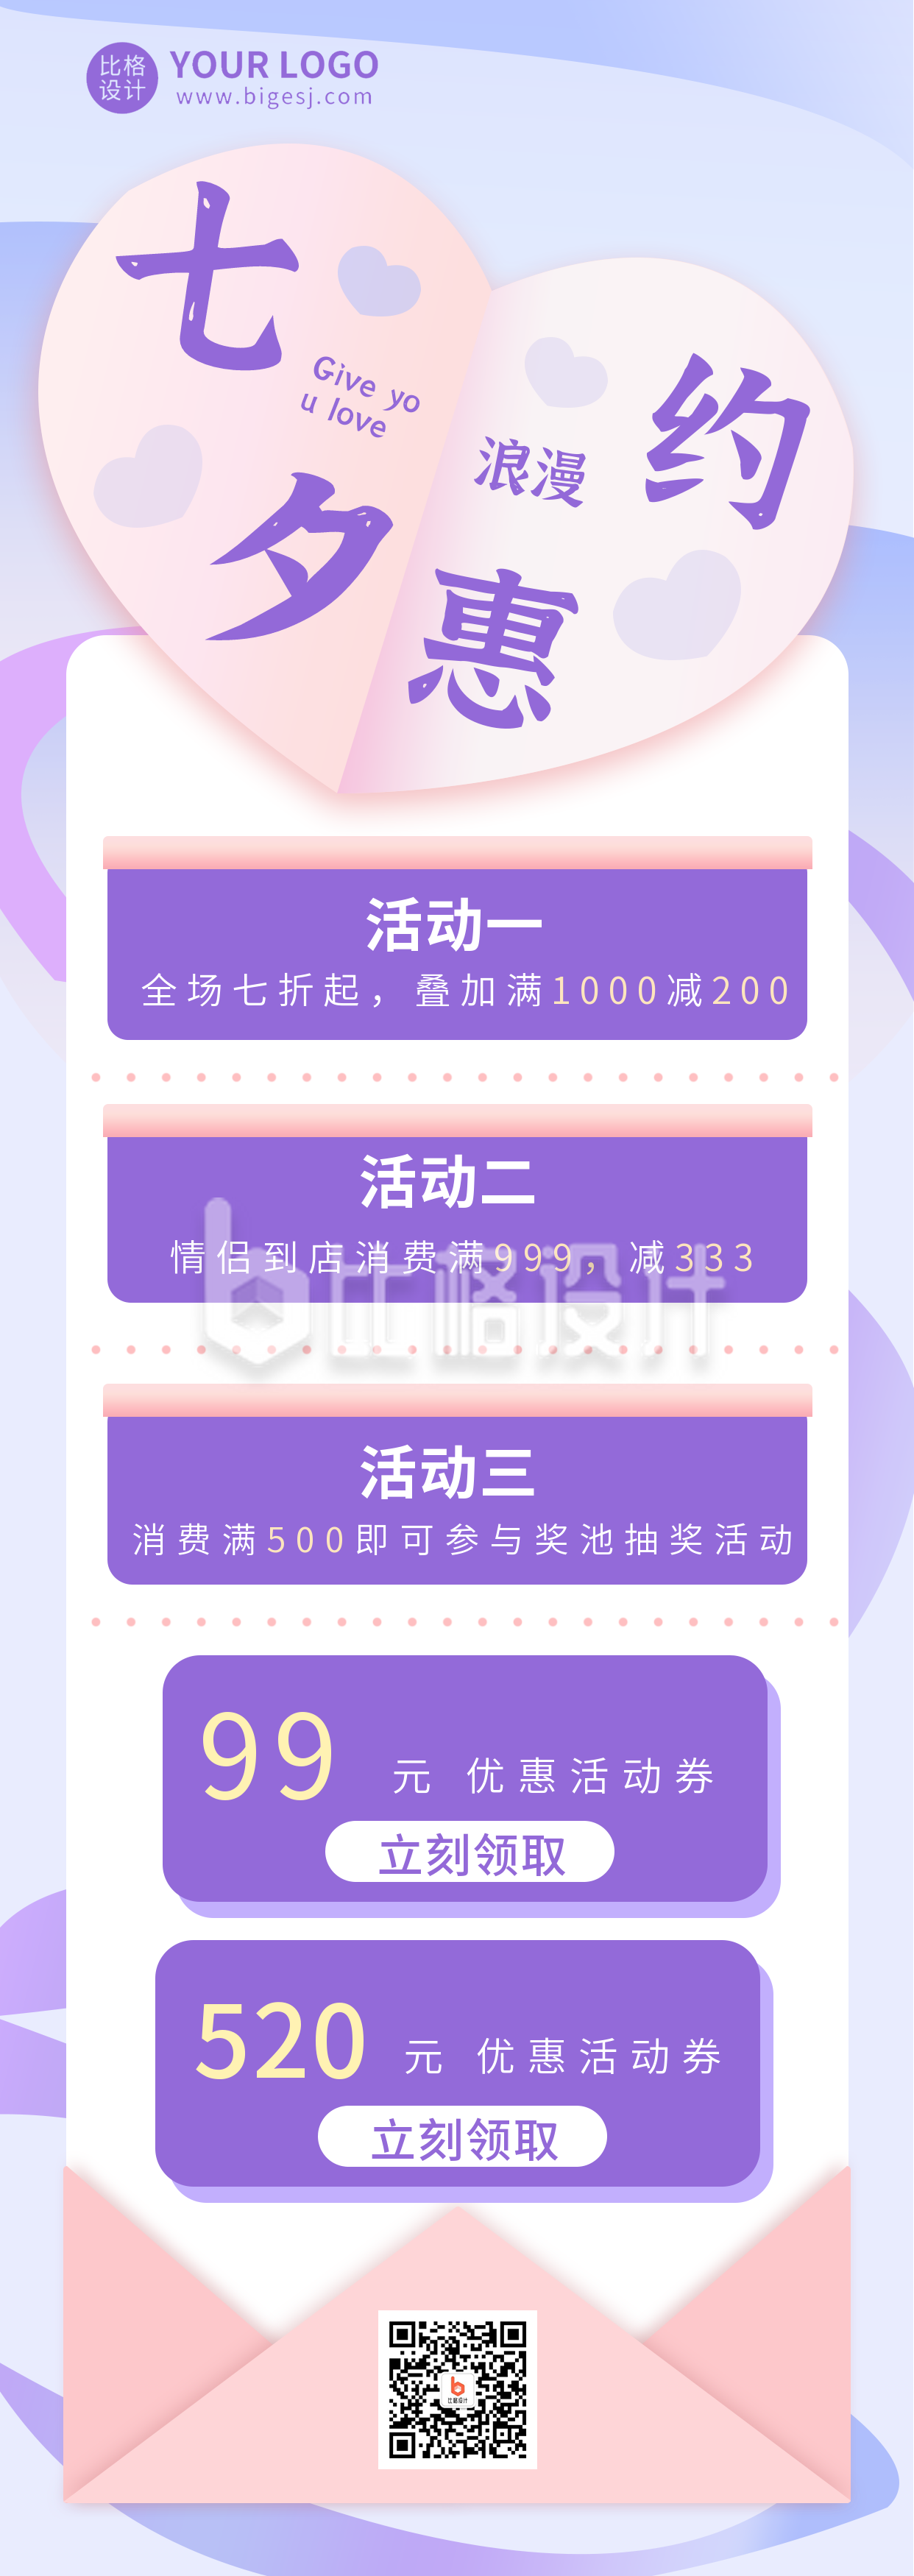 紫色浪漫文艺手绘七夕优惠活动长图海报